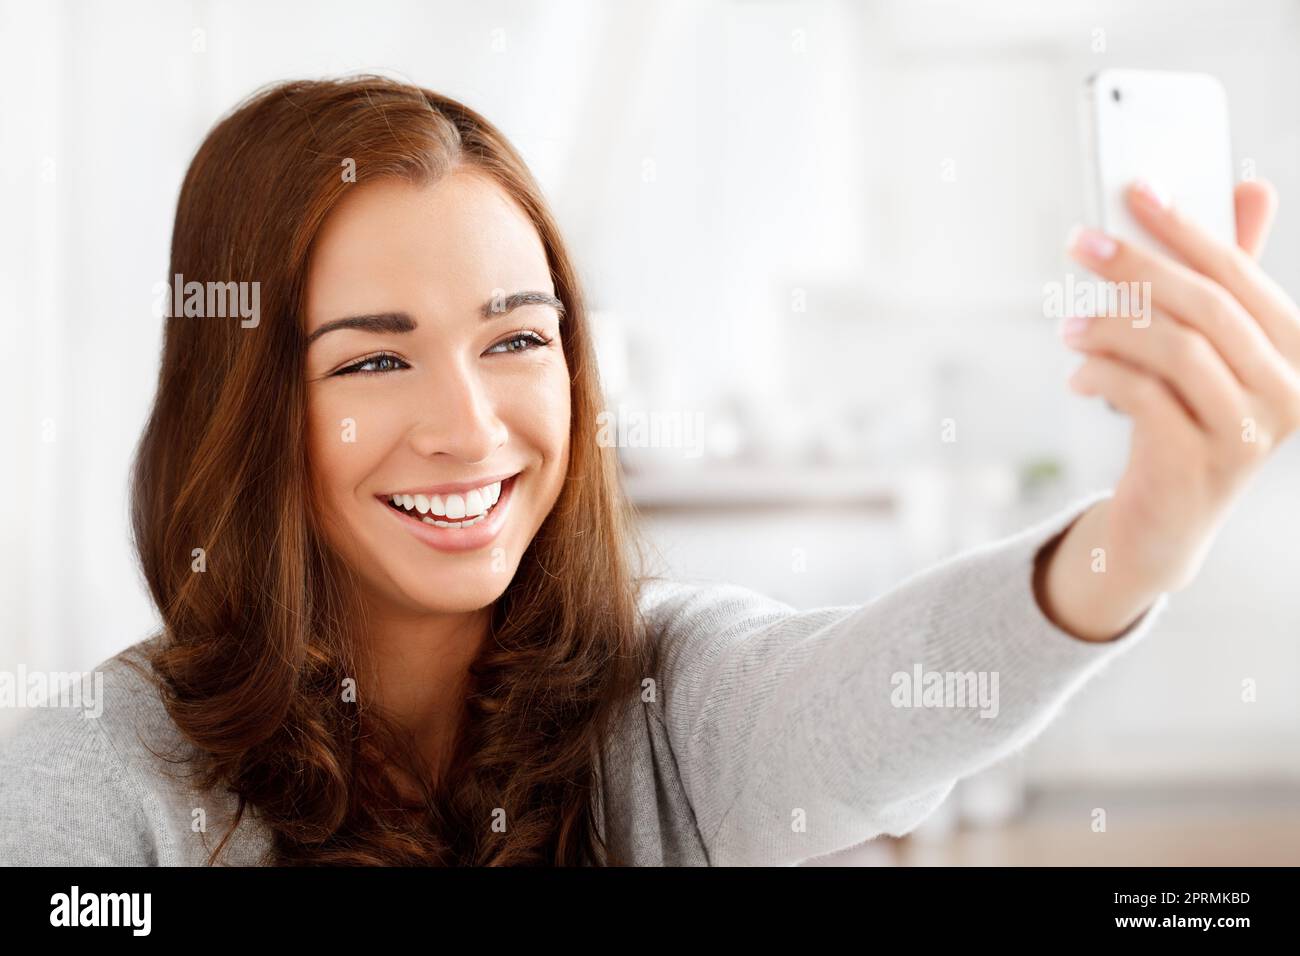 Selfie, téléphone et réseaux sociaux avec une jeune femme prenant une photo ou une photo sur son smartphone pour son statut en ligne ou son calendrier. Bonne femme posant pour une photo dans une maison avec la technologie mobile Banque D'Images